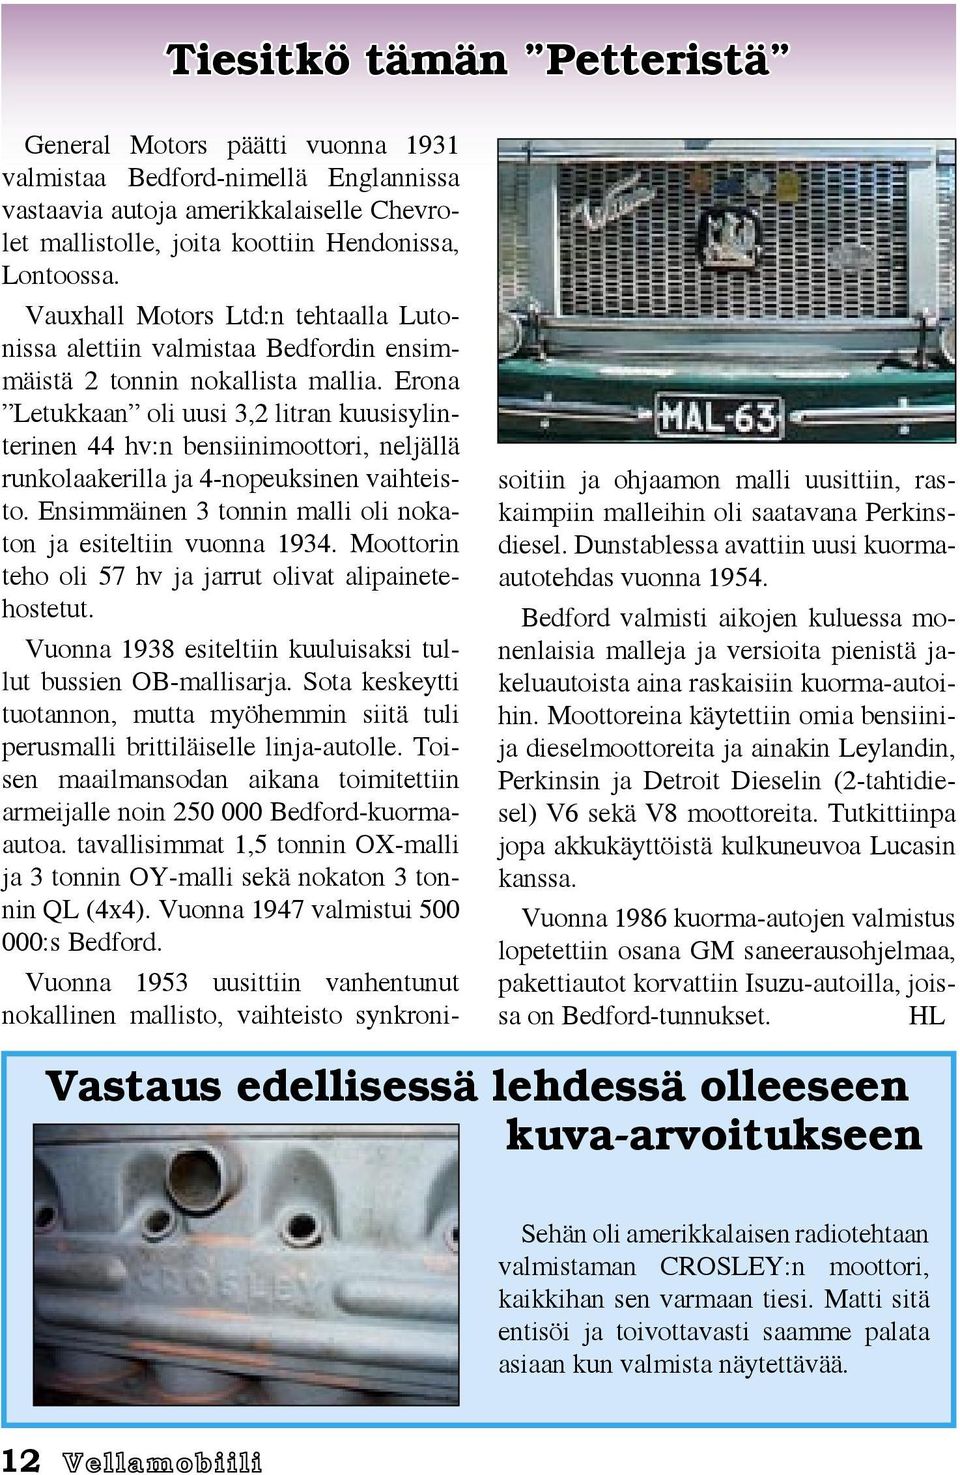 Erona Letukkaan oli uusi 3,2 litran kuusisylinterinen 44 hv:n bensiinimoottori, neljällä runkolaakerilla ja 4-nopeuksinen vaihteisto. Ensimmäinen 3 tonnin malli oli nokaton ja esiteltiin vuonna 1934.